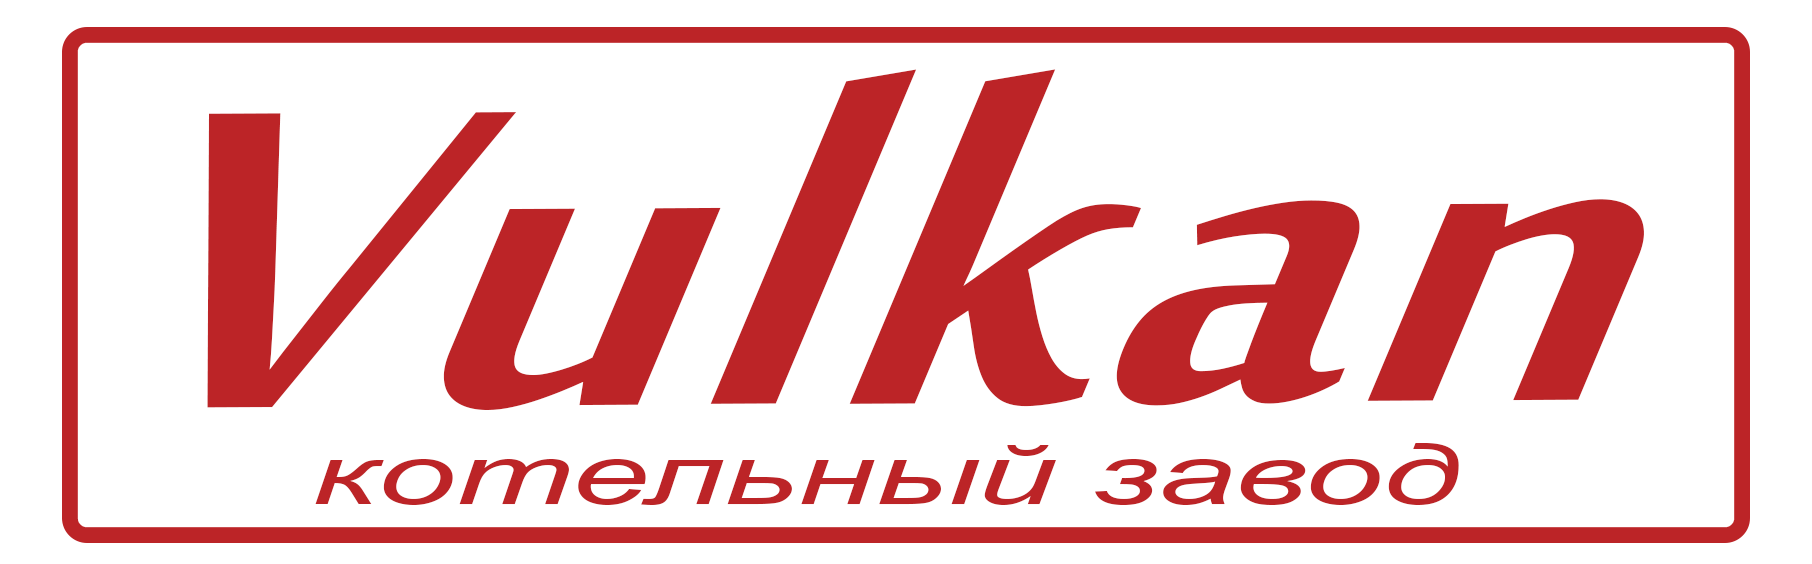 Vulkan котельный завод логотип пнг png прозрачный фон